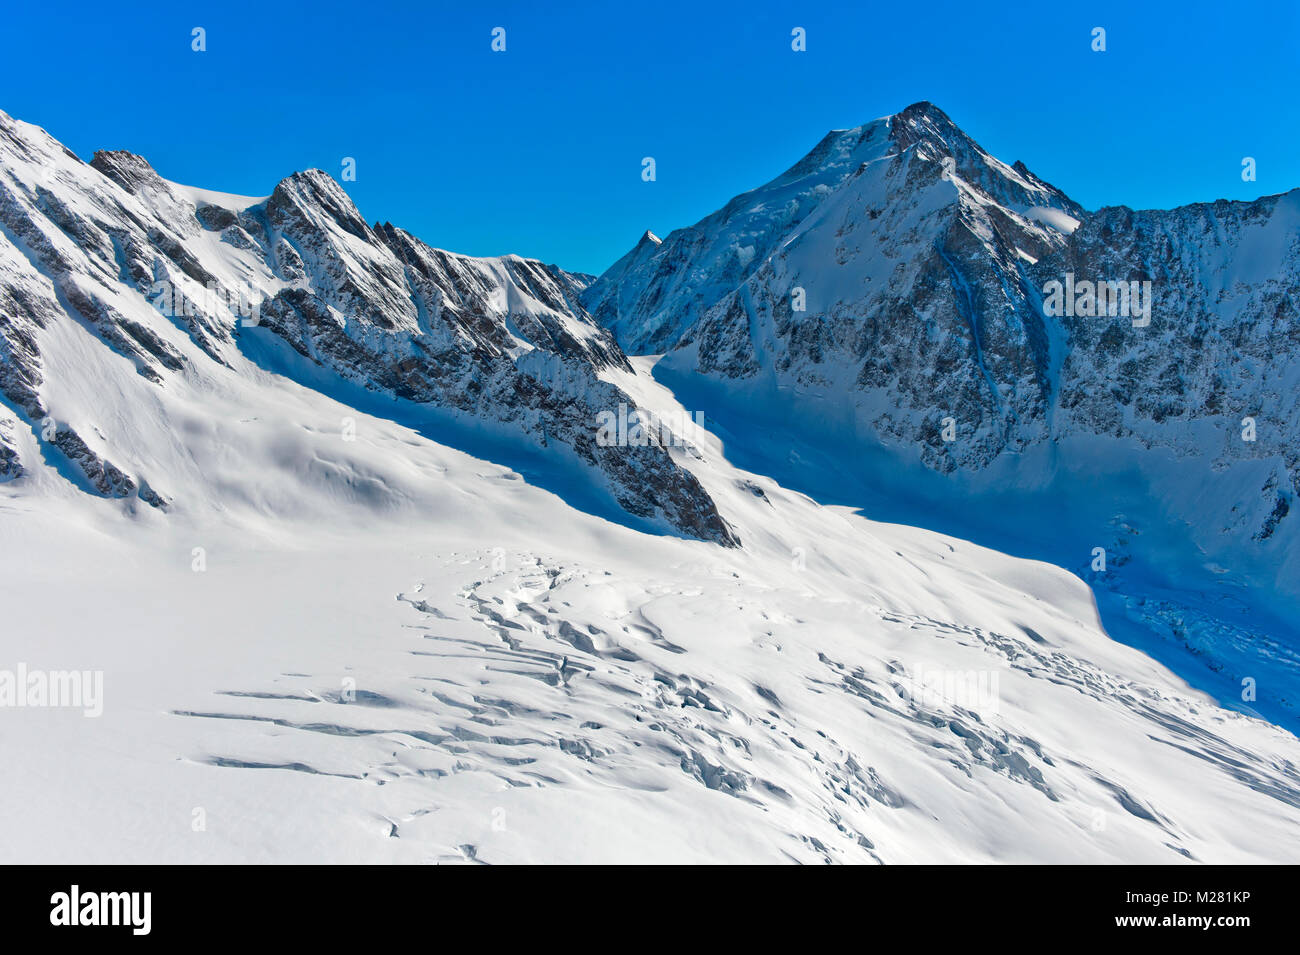 Anun clacier couverte de neige, dans l'arrière-plan et pics Sattelhorn Aletschhorn, Lötschental, Valais, Suisse Banque D'Images